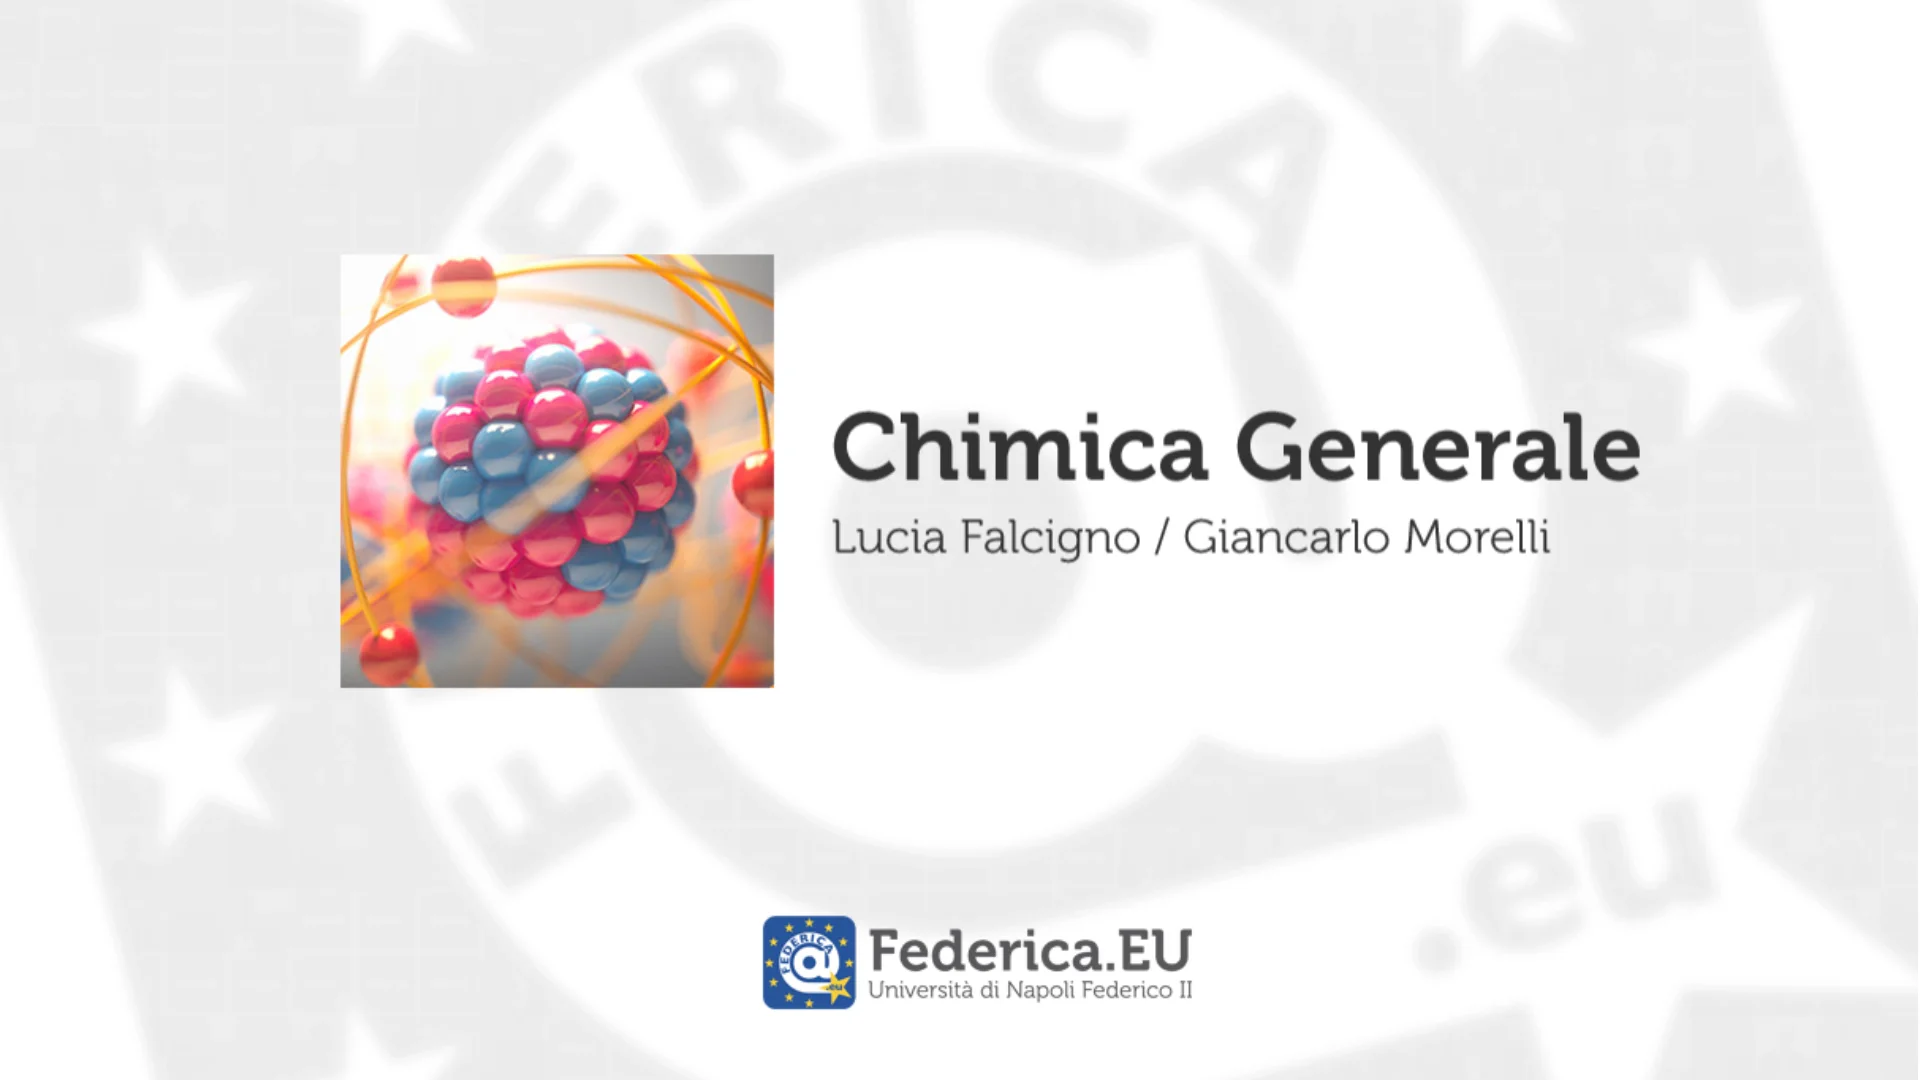 L.Falcigno / G.Morelli - Chimica Generale - Trailer on Vimeo